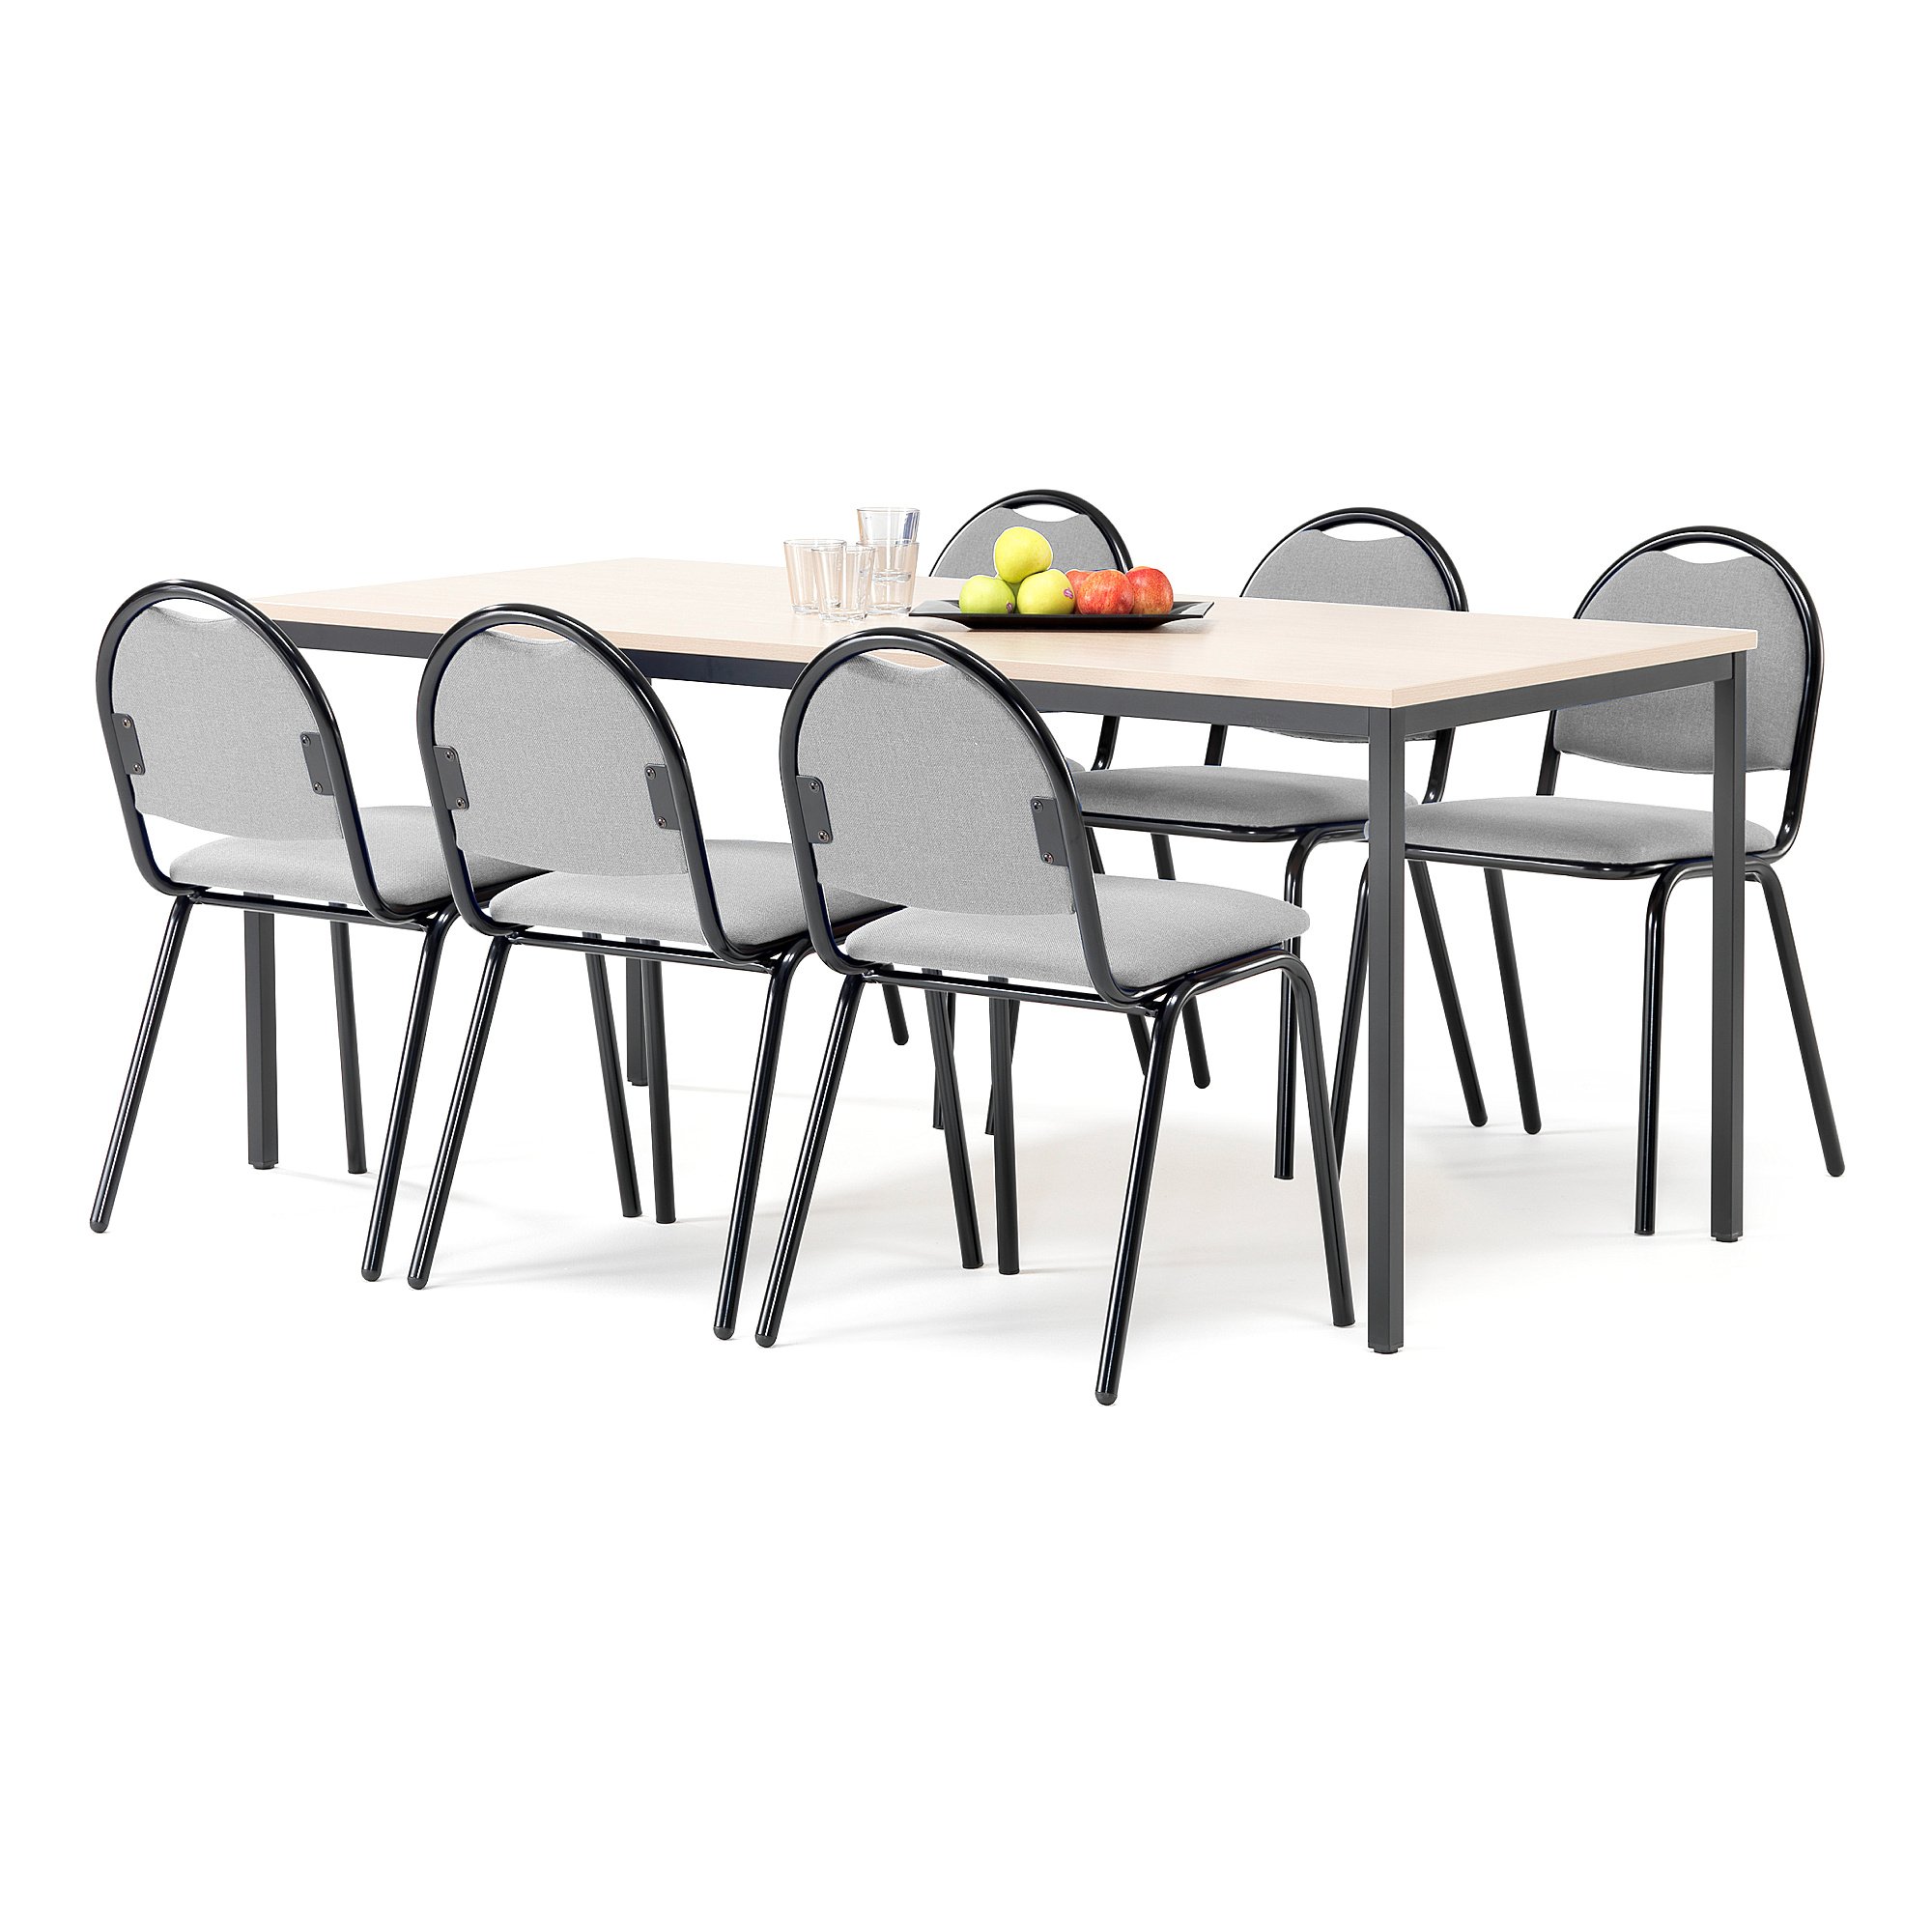 Jedálenská zostava: stôl 1800x800 mm, breza + 6 stoličiek, šedá/čierna